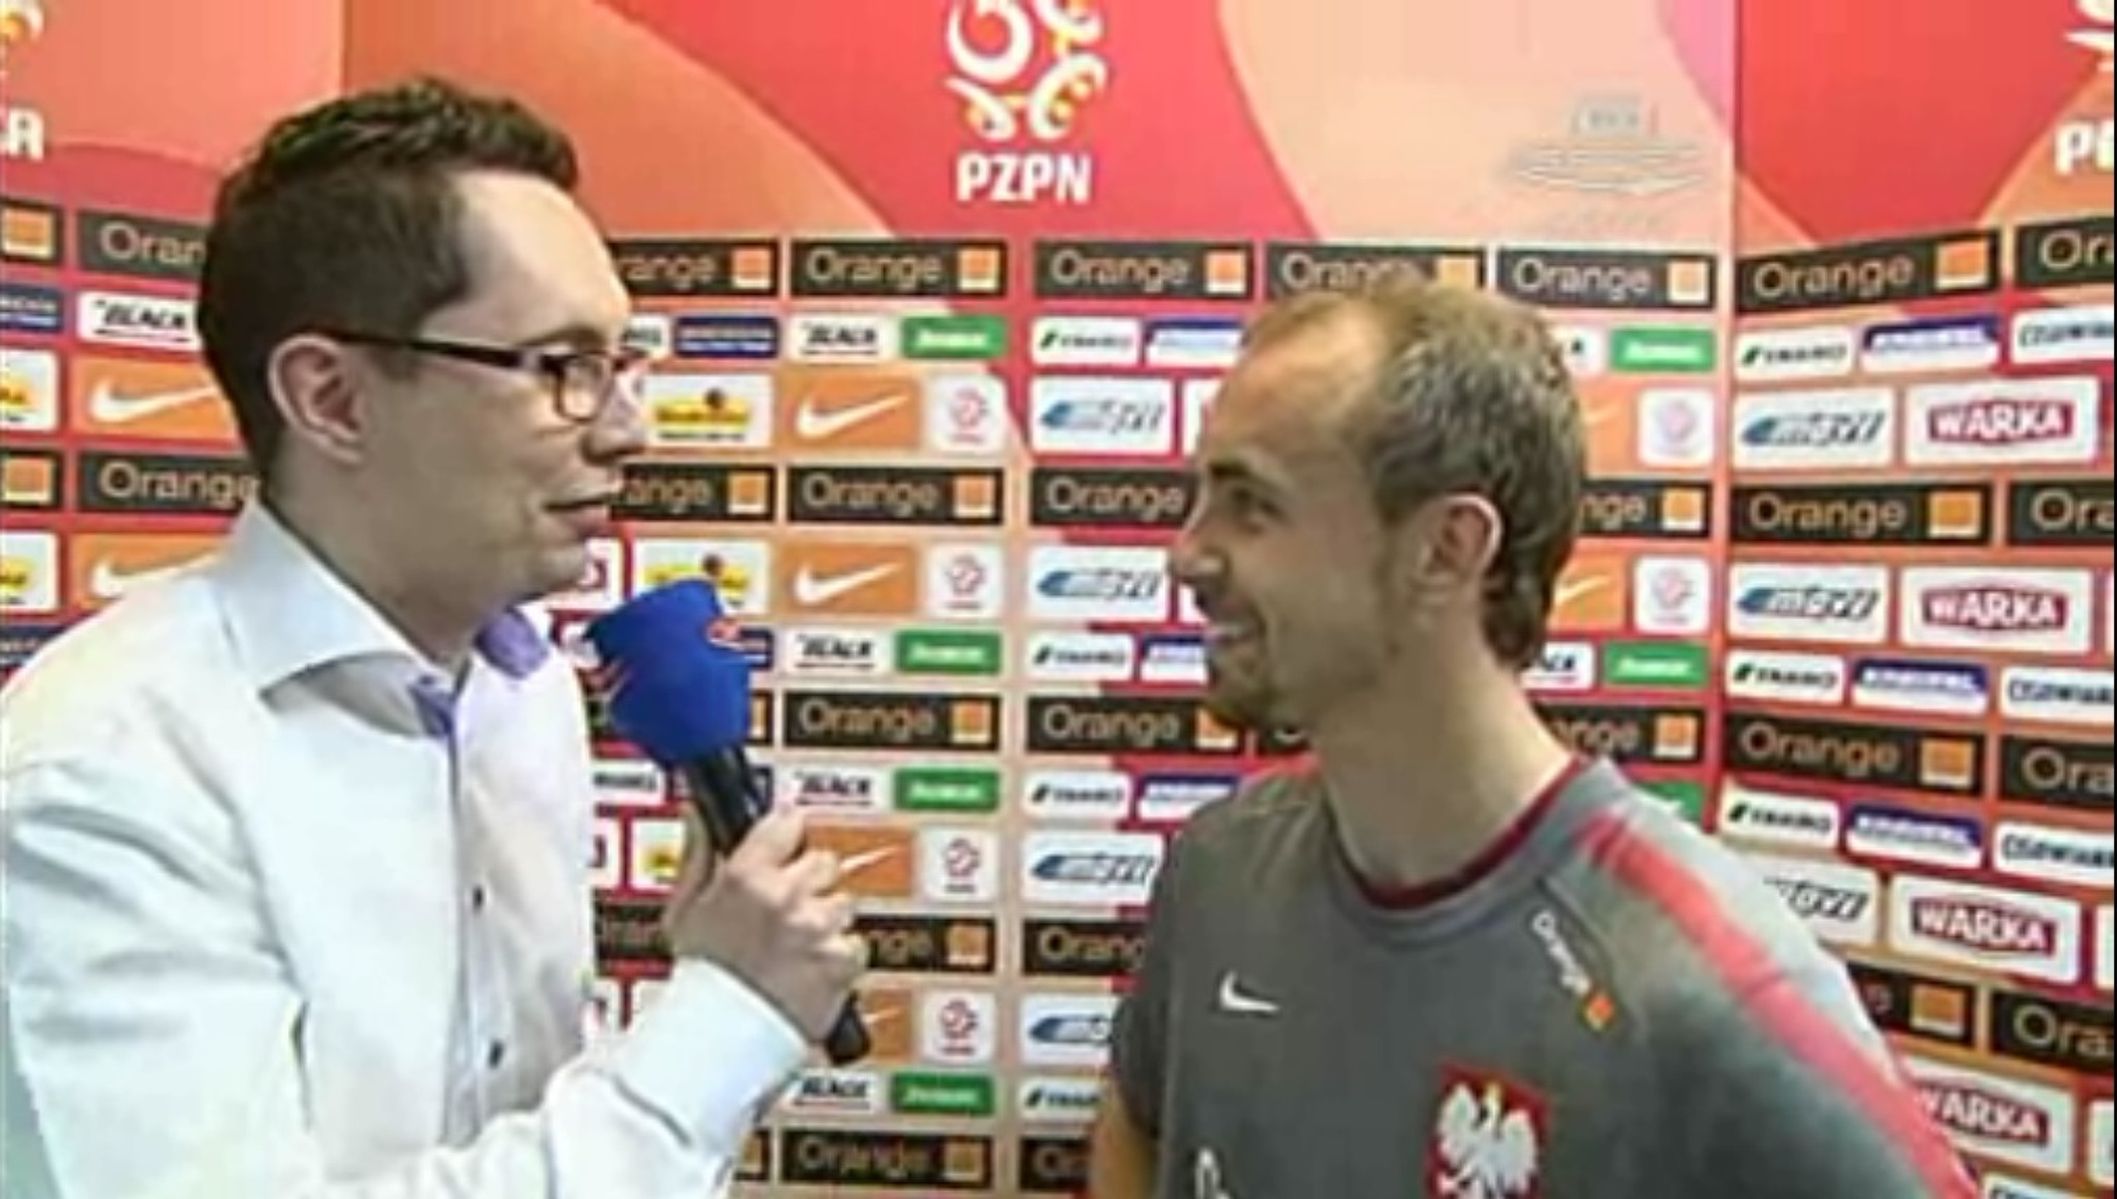 Olsztyniak przepytuje olsztyniaka, czyli Maciej Iwański (z lewej) i Adrian Mierzejewski po meczu kadry. Fot. TVP Sport